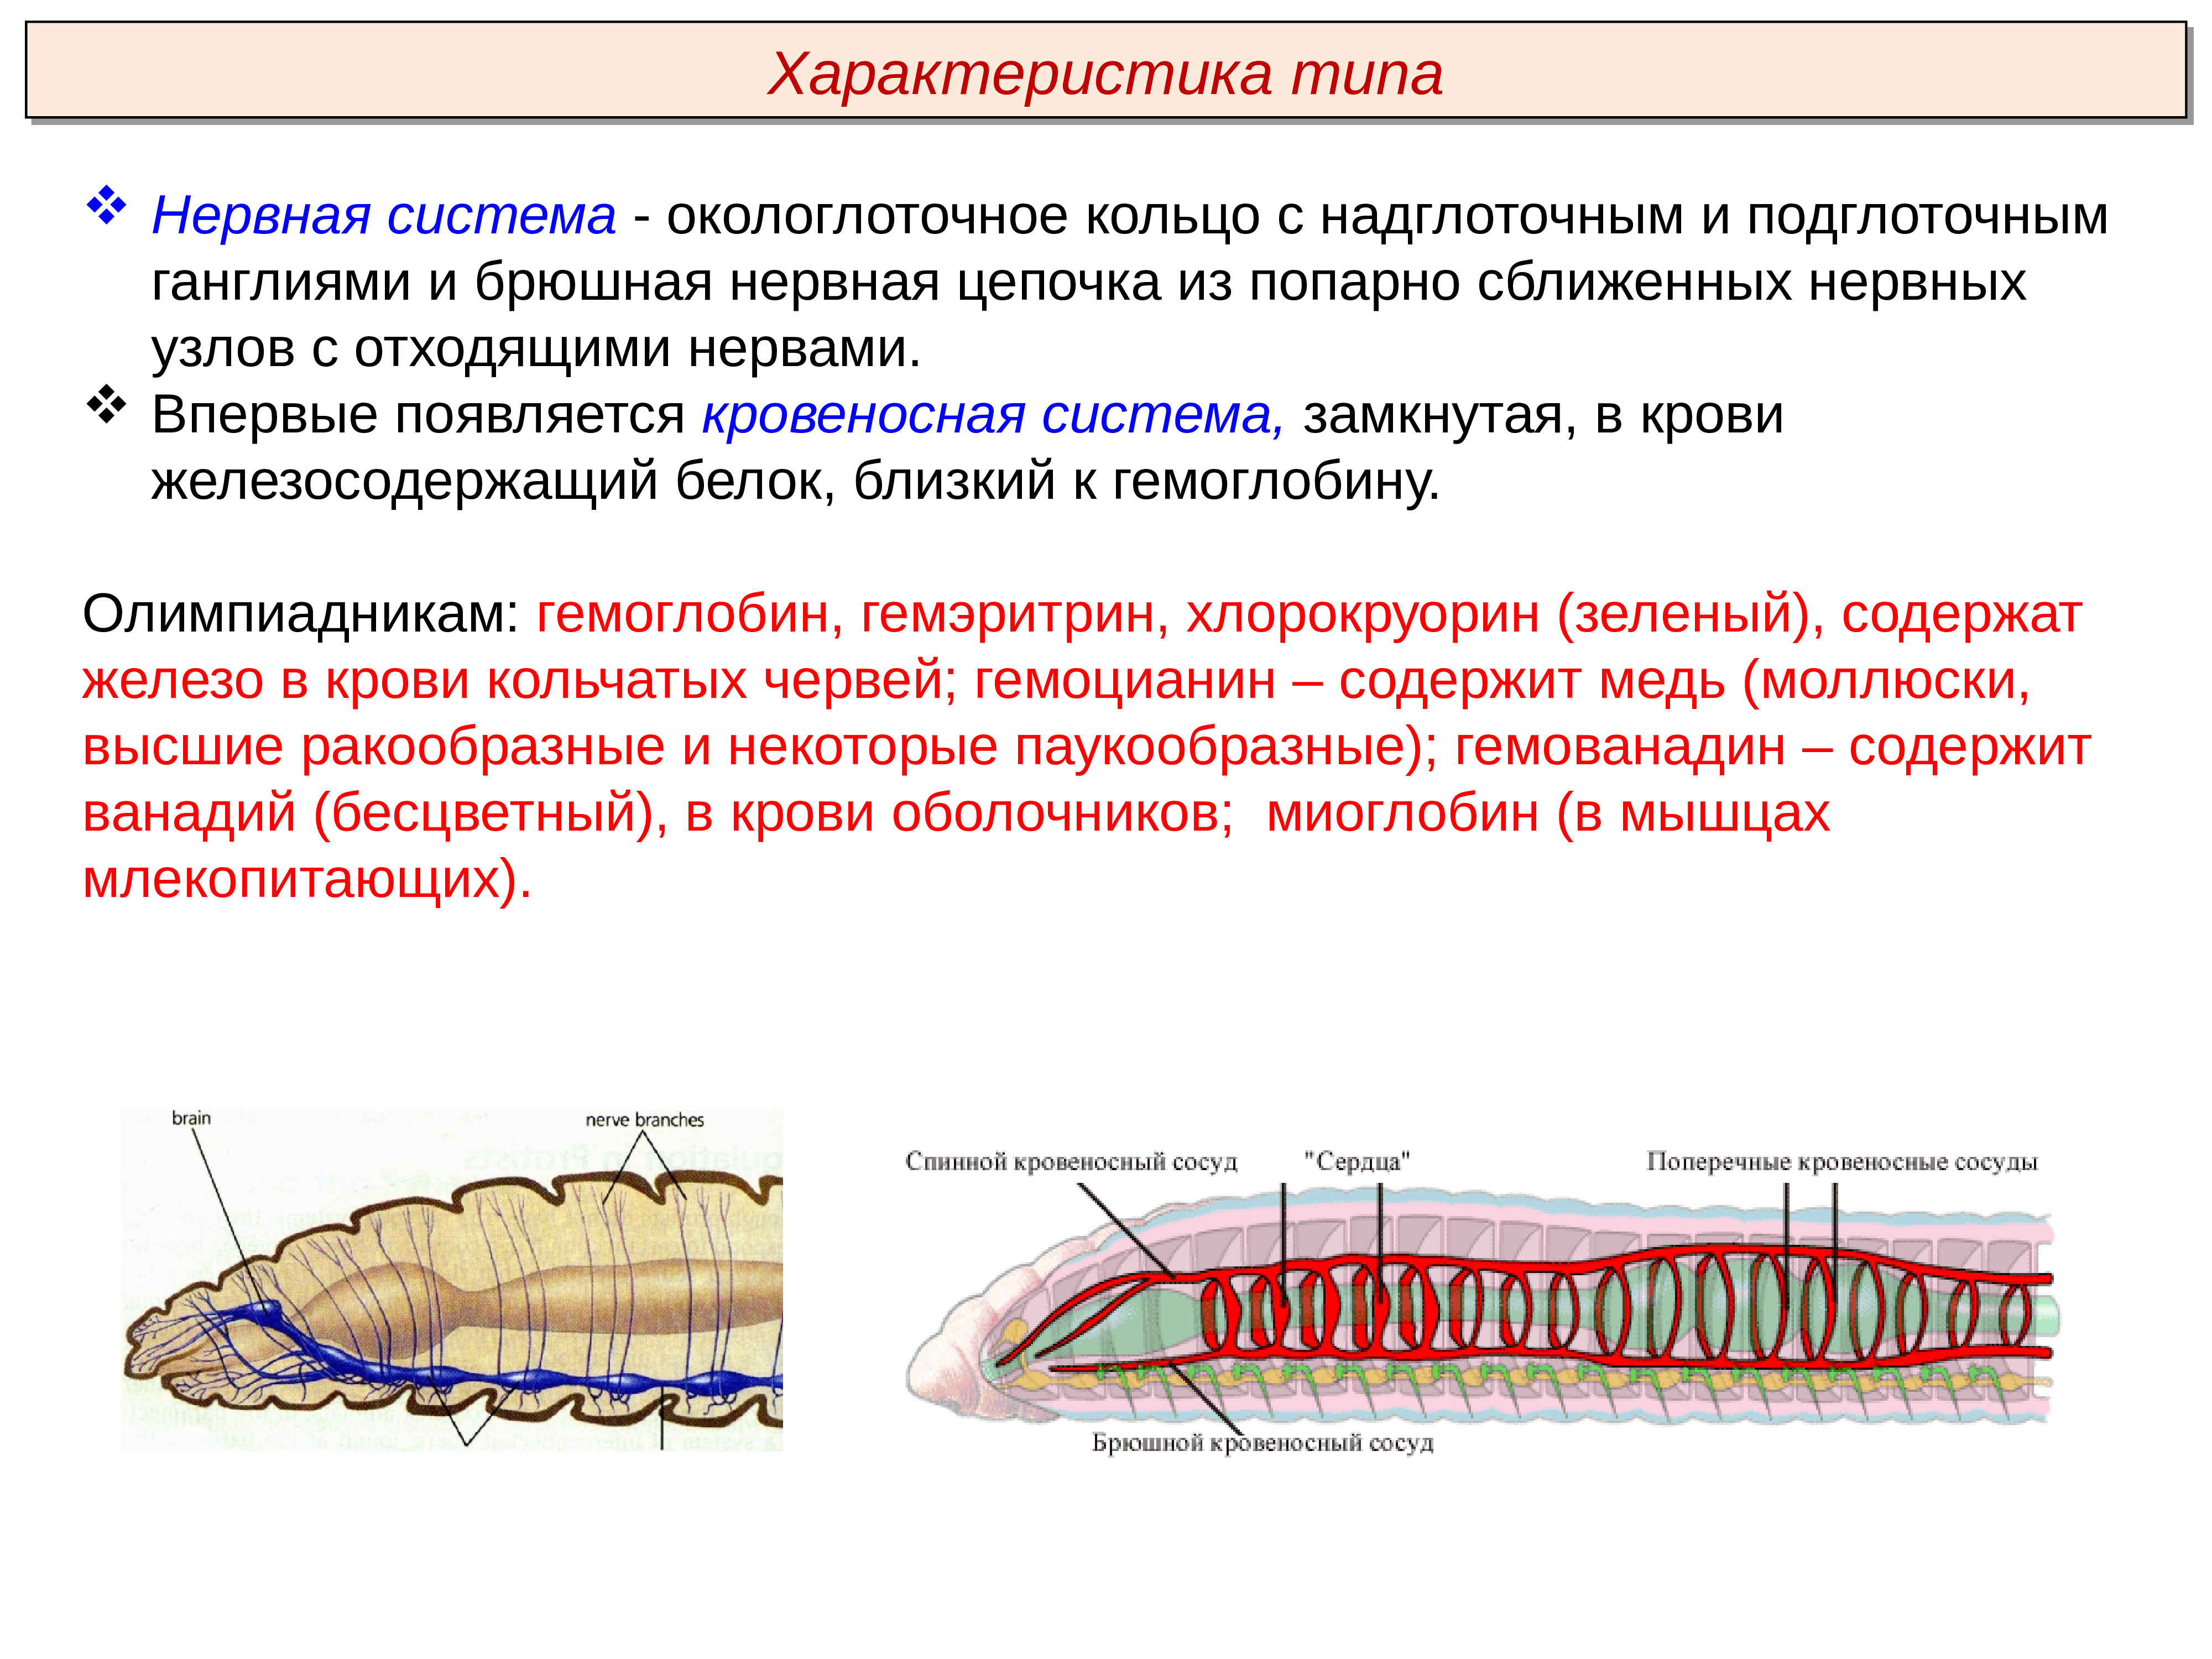 Какую функцию выполняет брюшная нервная цепочка. Тип кольчатые черви Annelida. Кольчатые черви нервная система окологлоточное кольцо. Нервная система кольчатых червей 7 класс. Нервная система кольчатых червей схема.